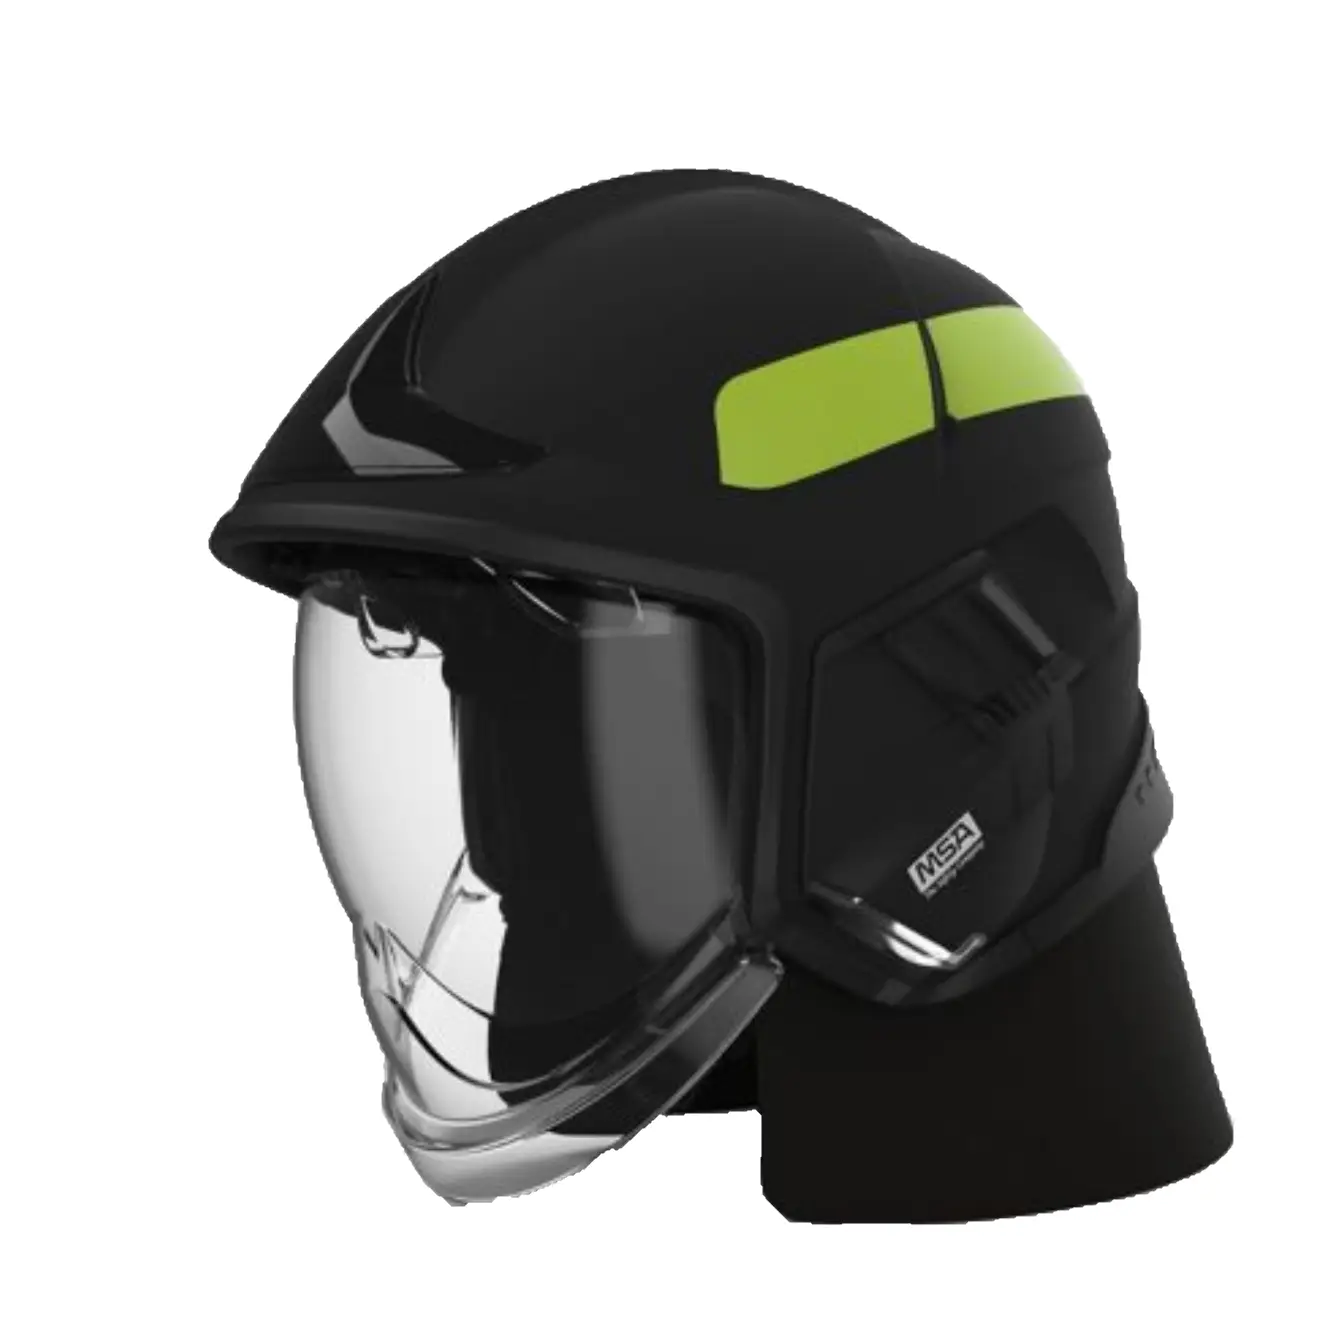 Casco Cairns XF1 con visor claro, cubre cuello y cinta reflejante de color negro